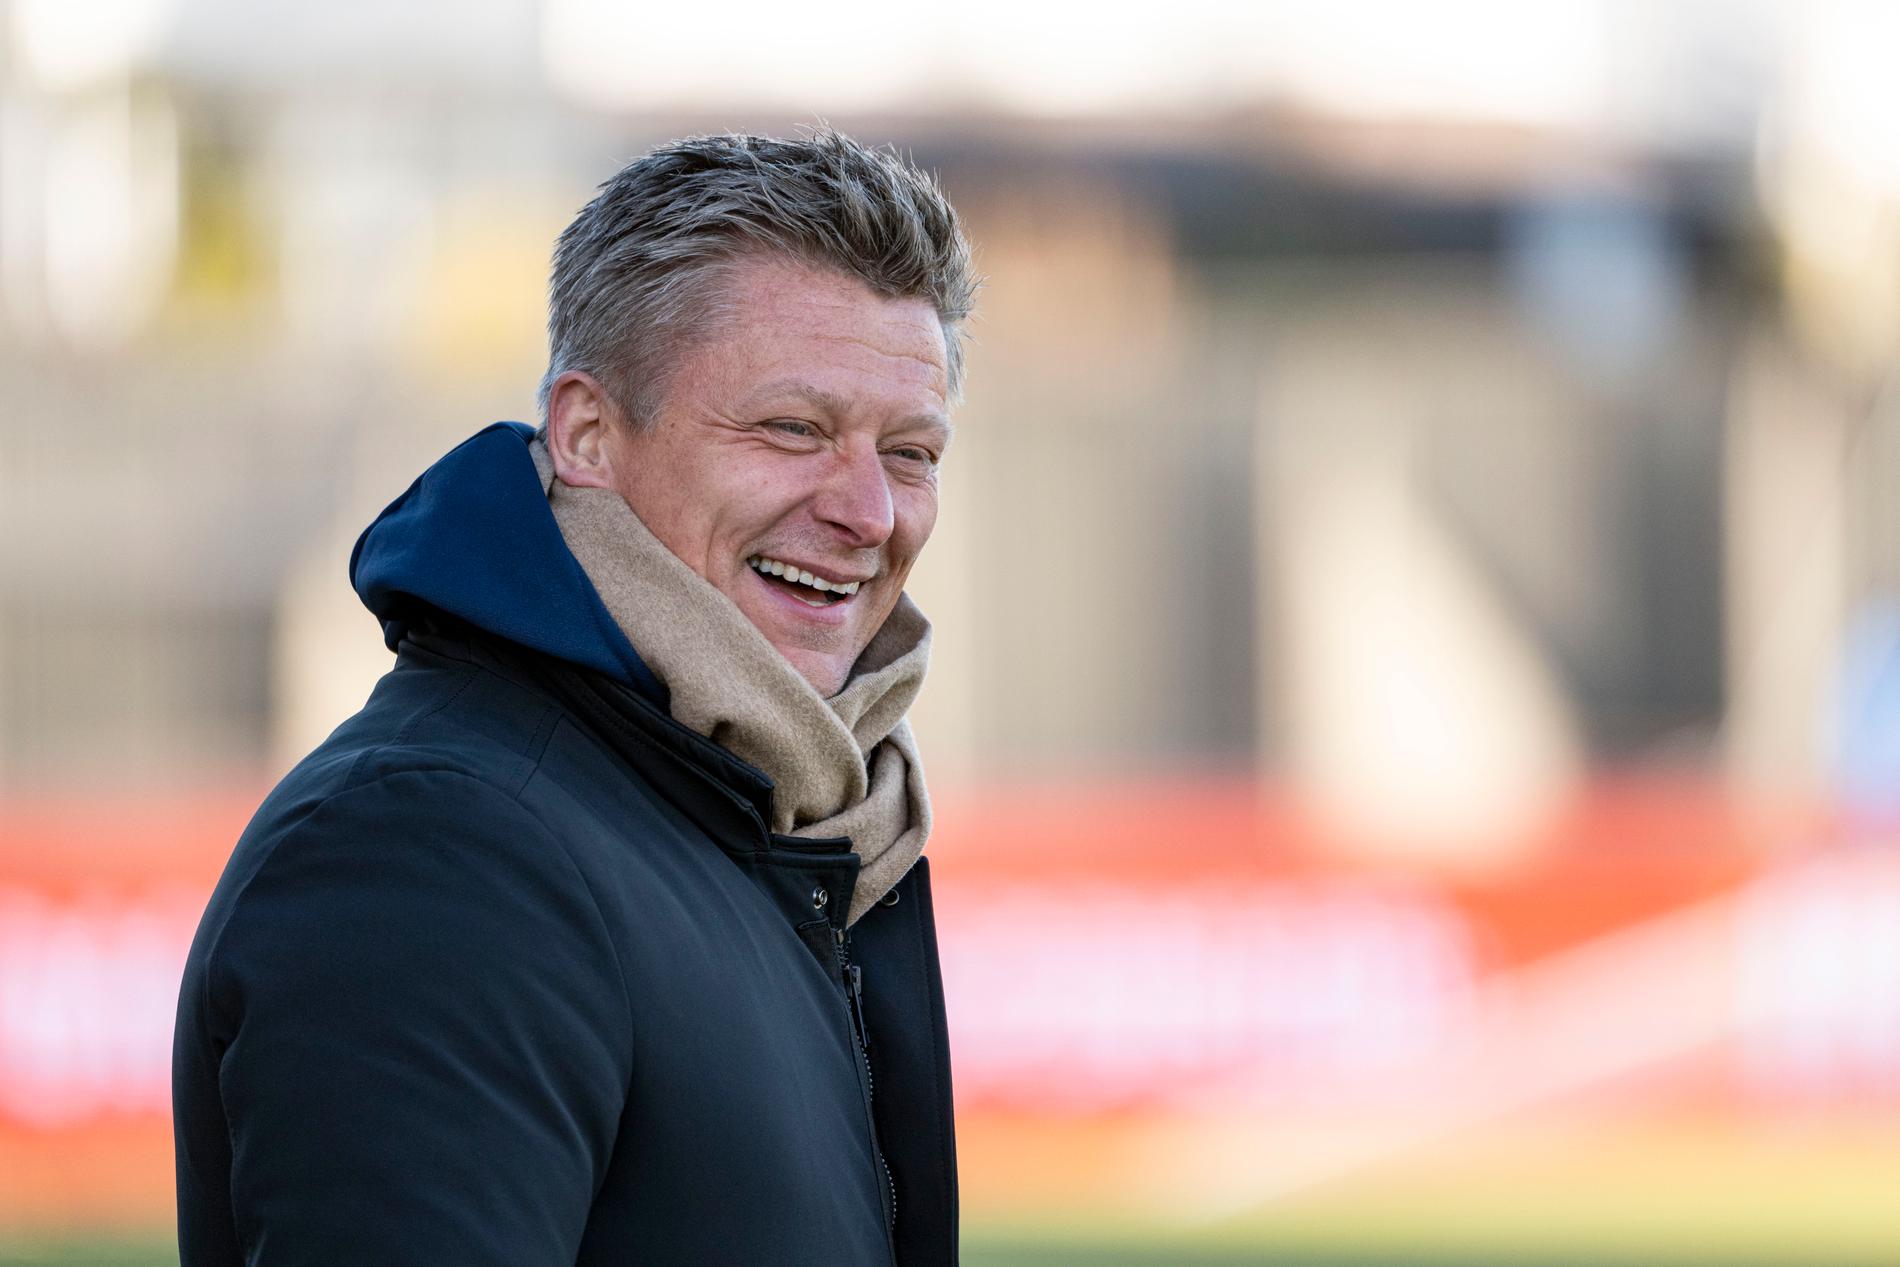 Mikkjal Thomassen delle Isole Faroe è il nuovo allenatore del Fredrikstad.  Come Klaksvik, ci riesce.